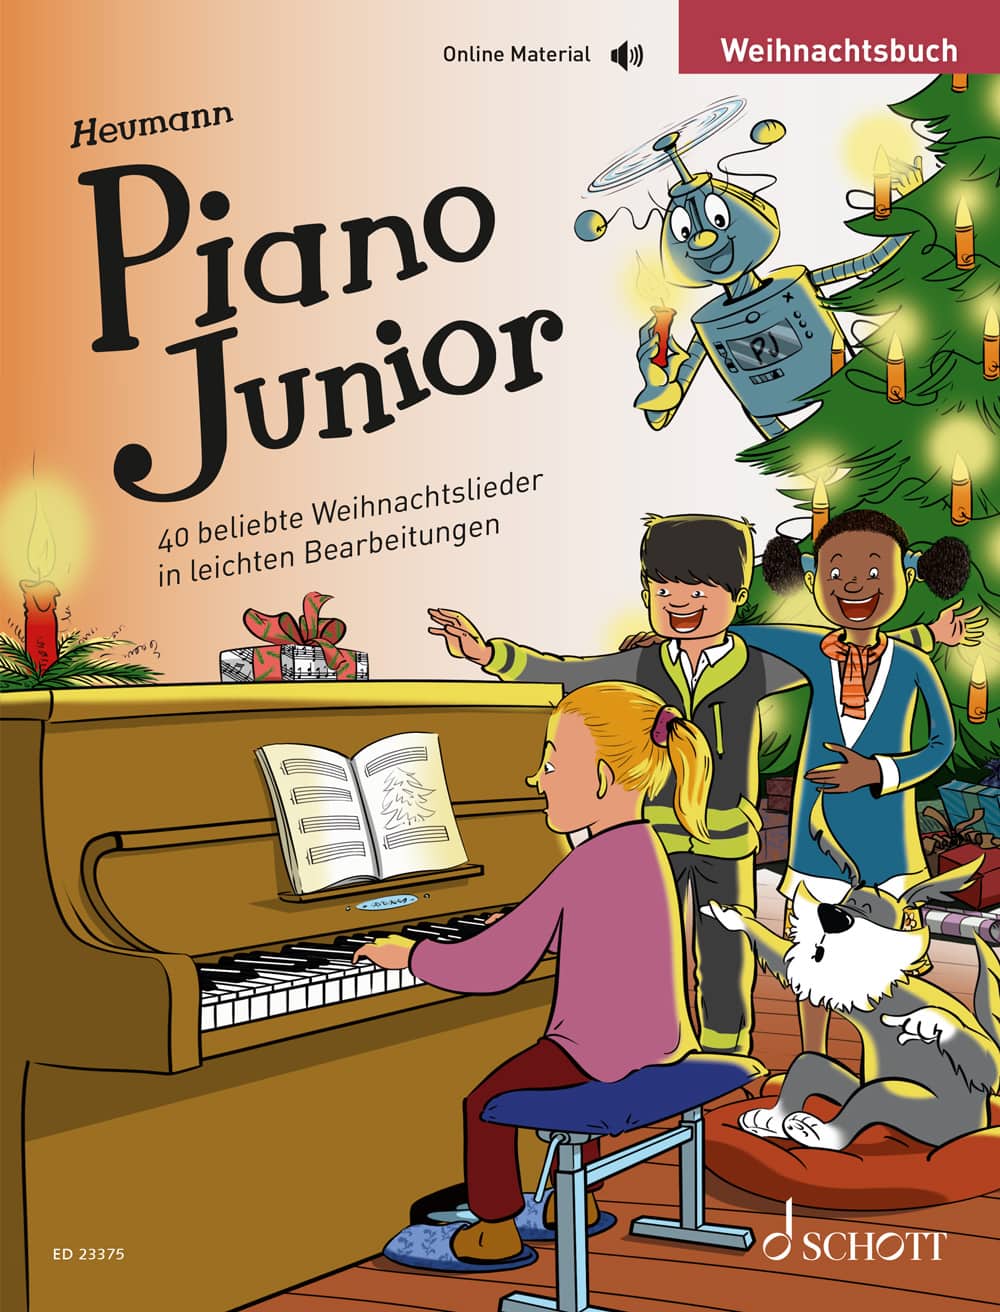 Piano Junior: Weihnachtsbuch